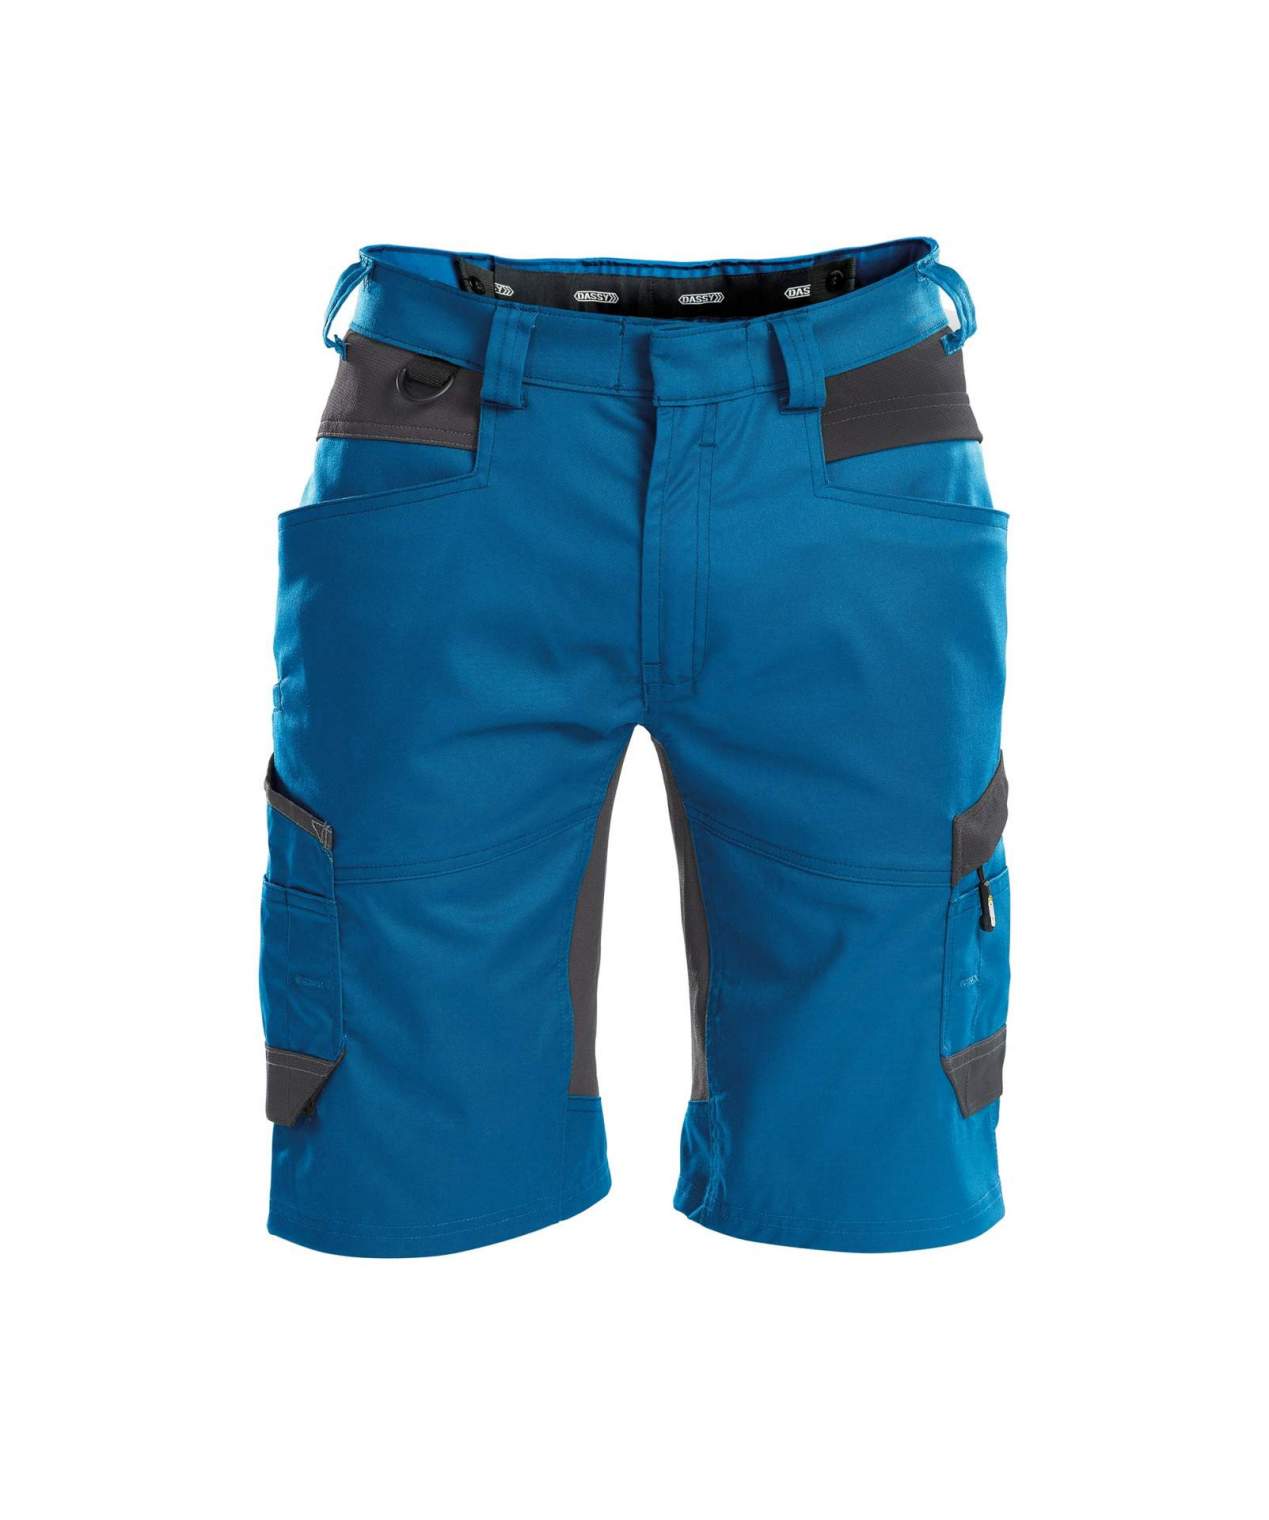 dassy axis herren shorts mit stretch azurblau